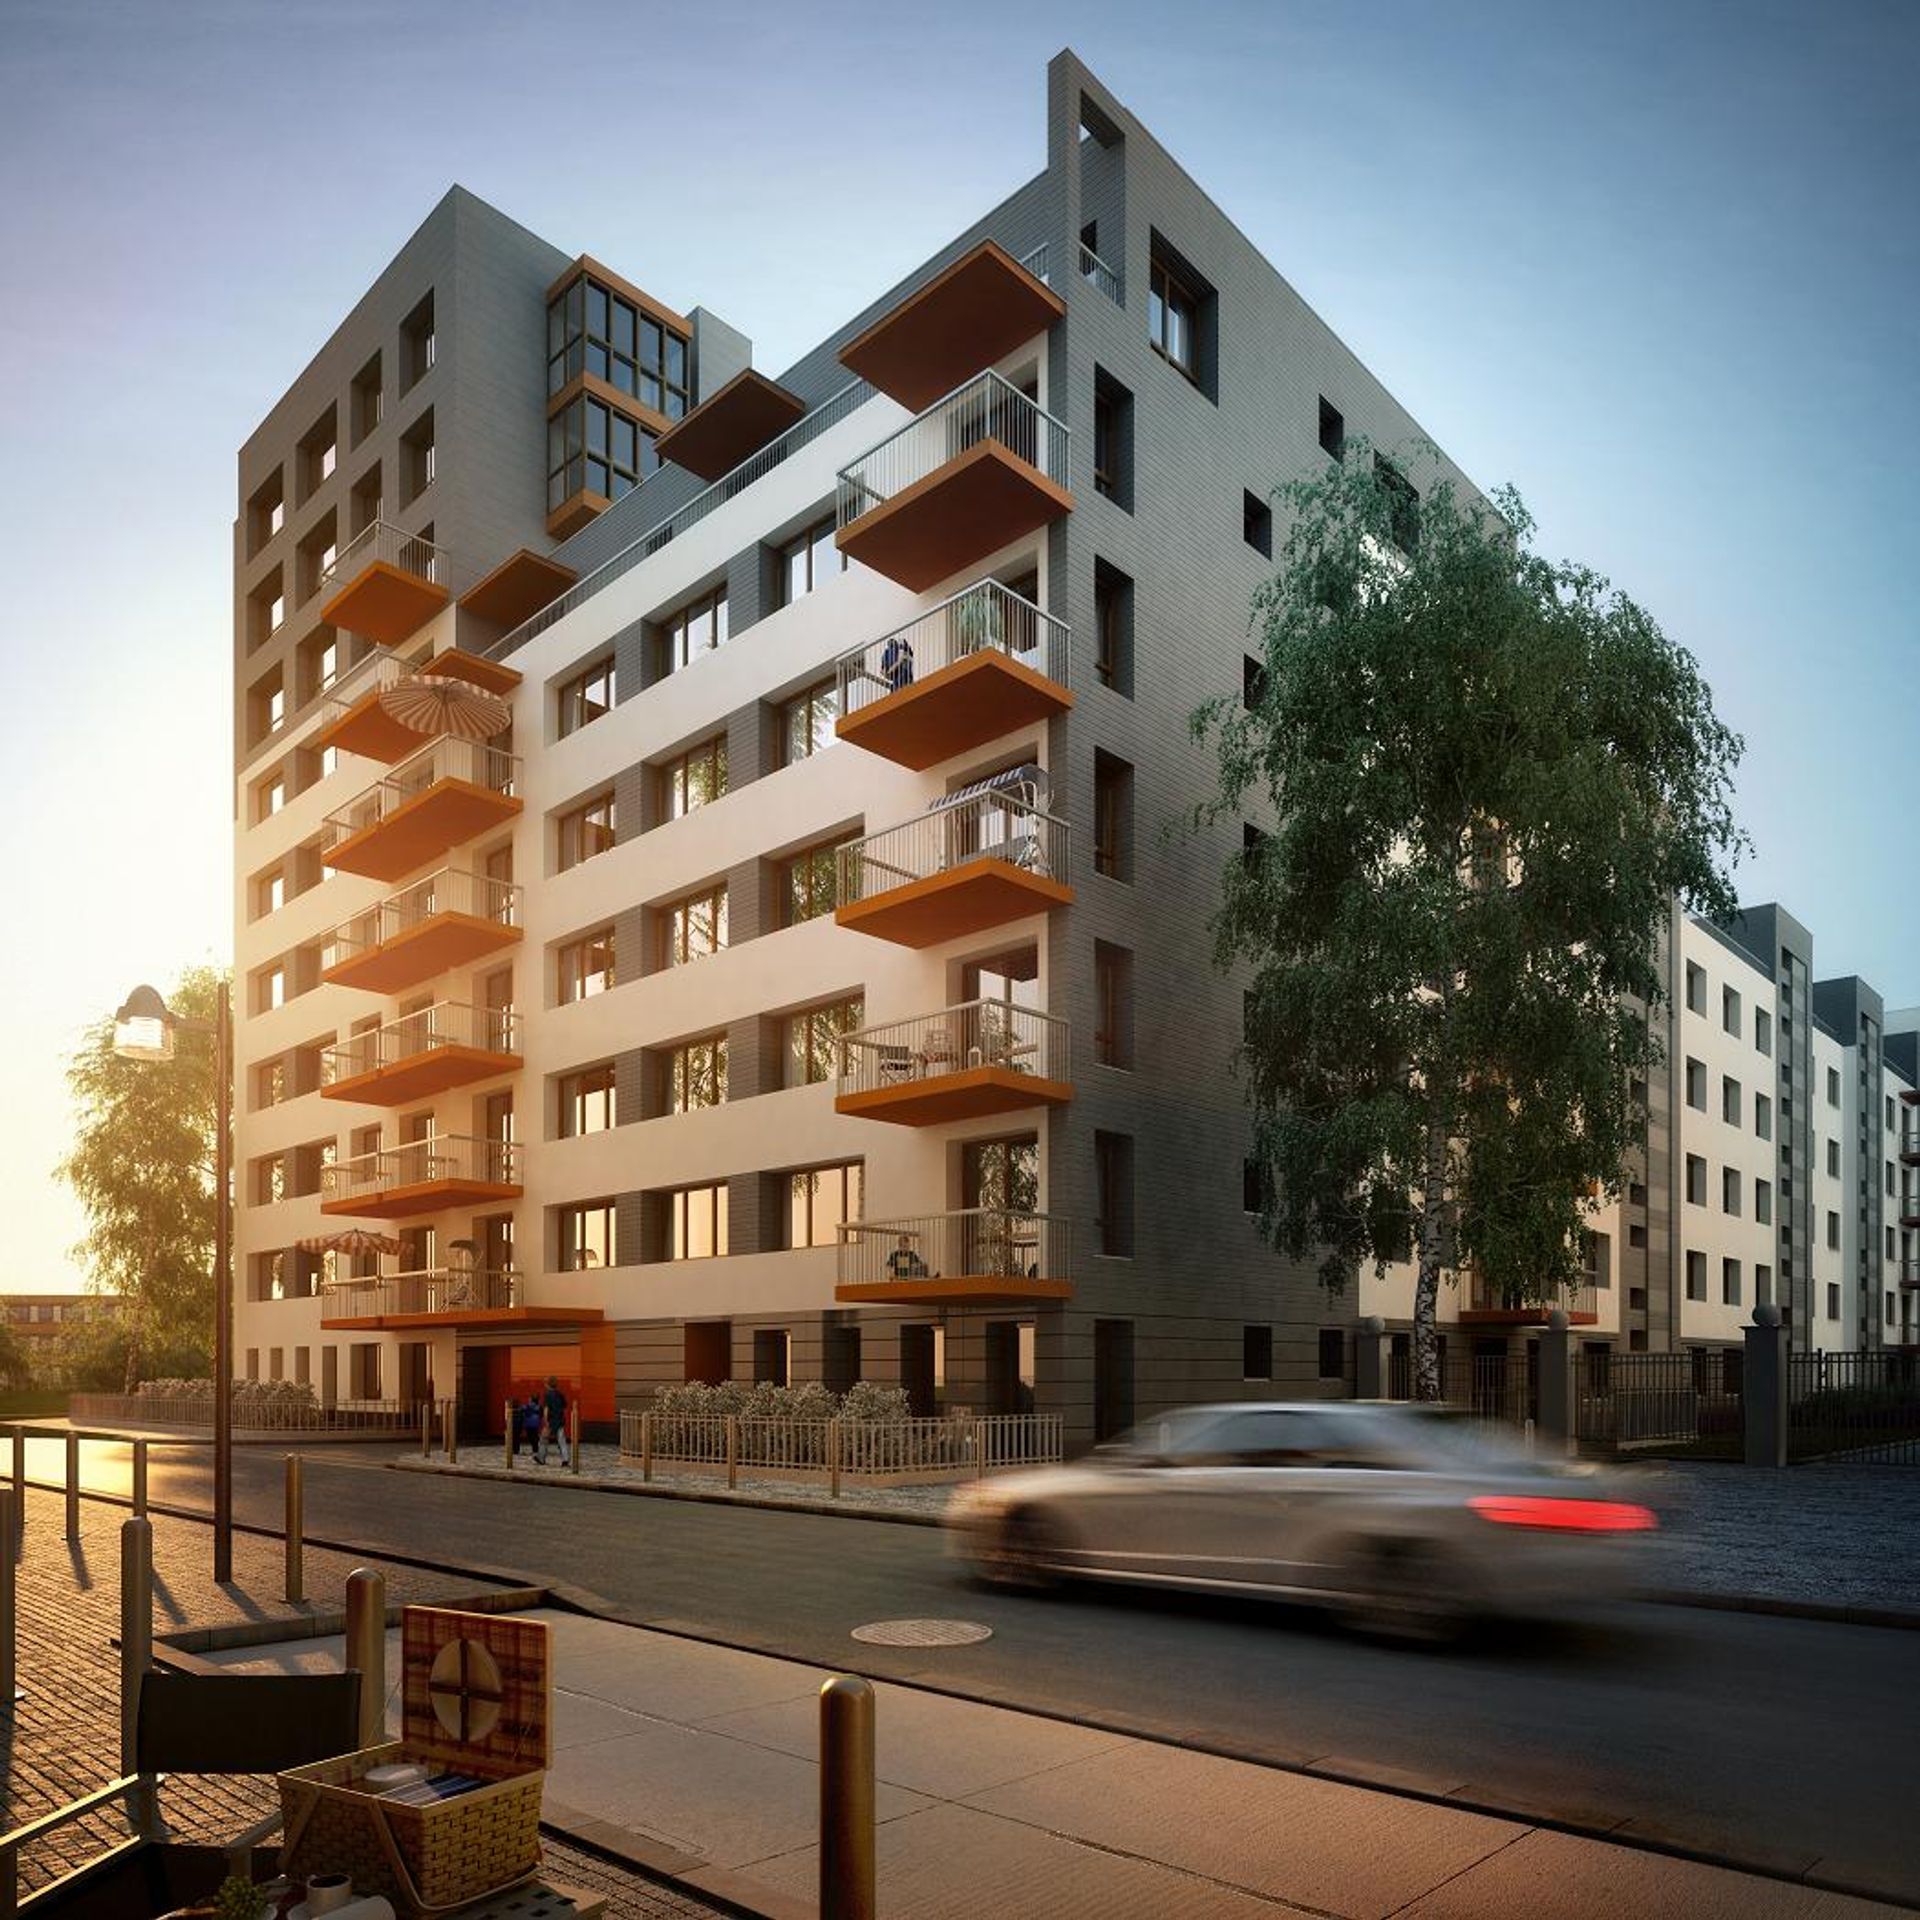  Henpol rozpoczął realizację trzeciego etapu osiedla Carre Arte dla Bouygues Immobilier Polska